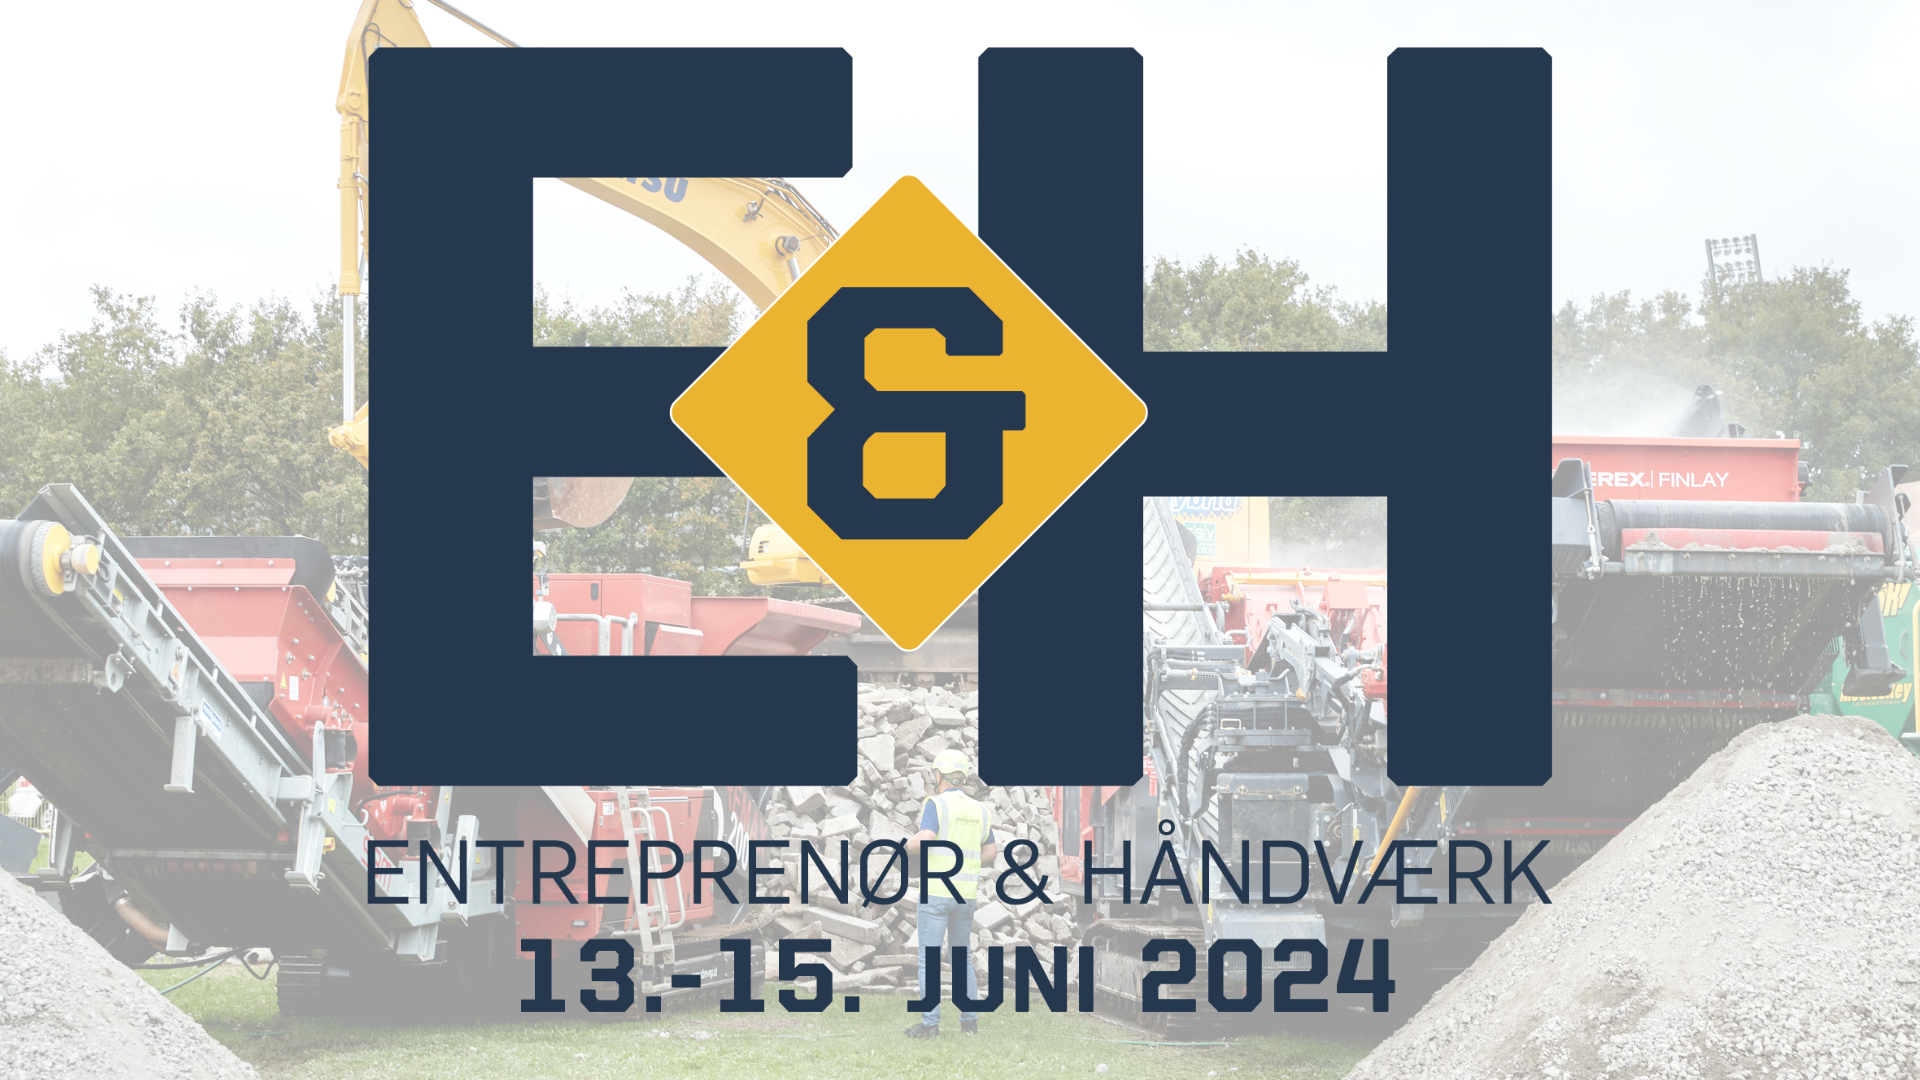 E&H messe i Herning - 13.-15. juni